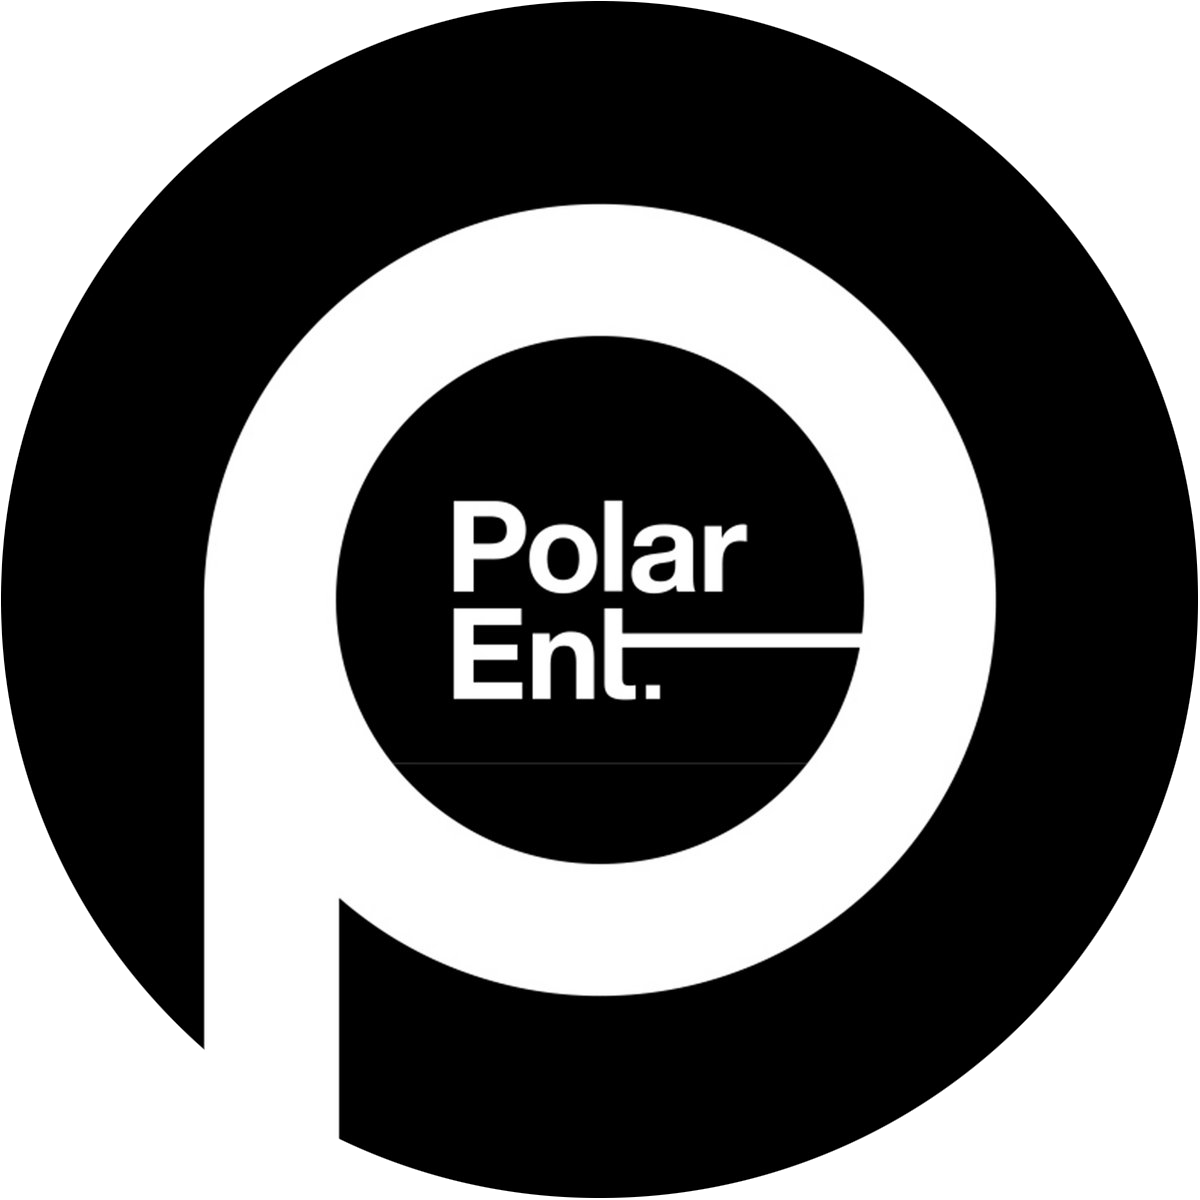 Polar Entertainment